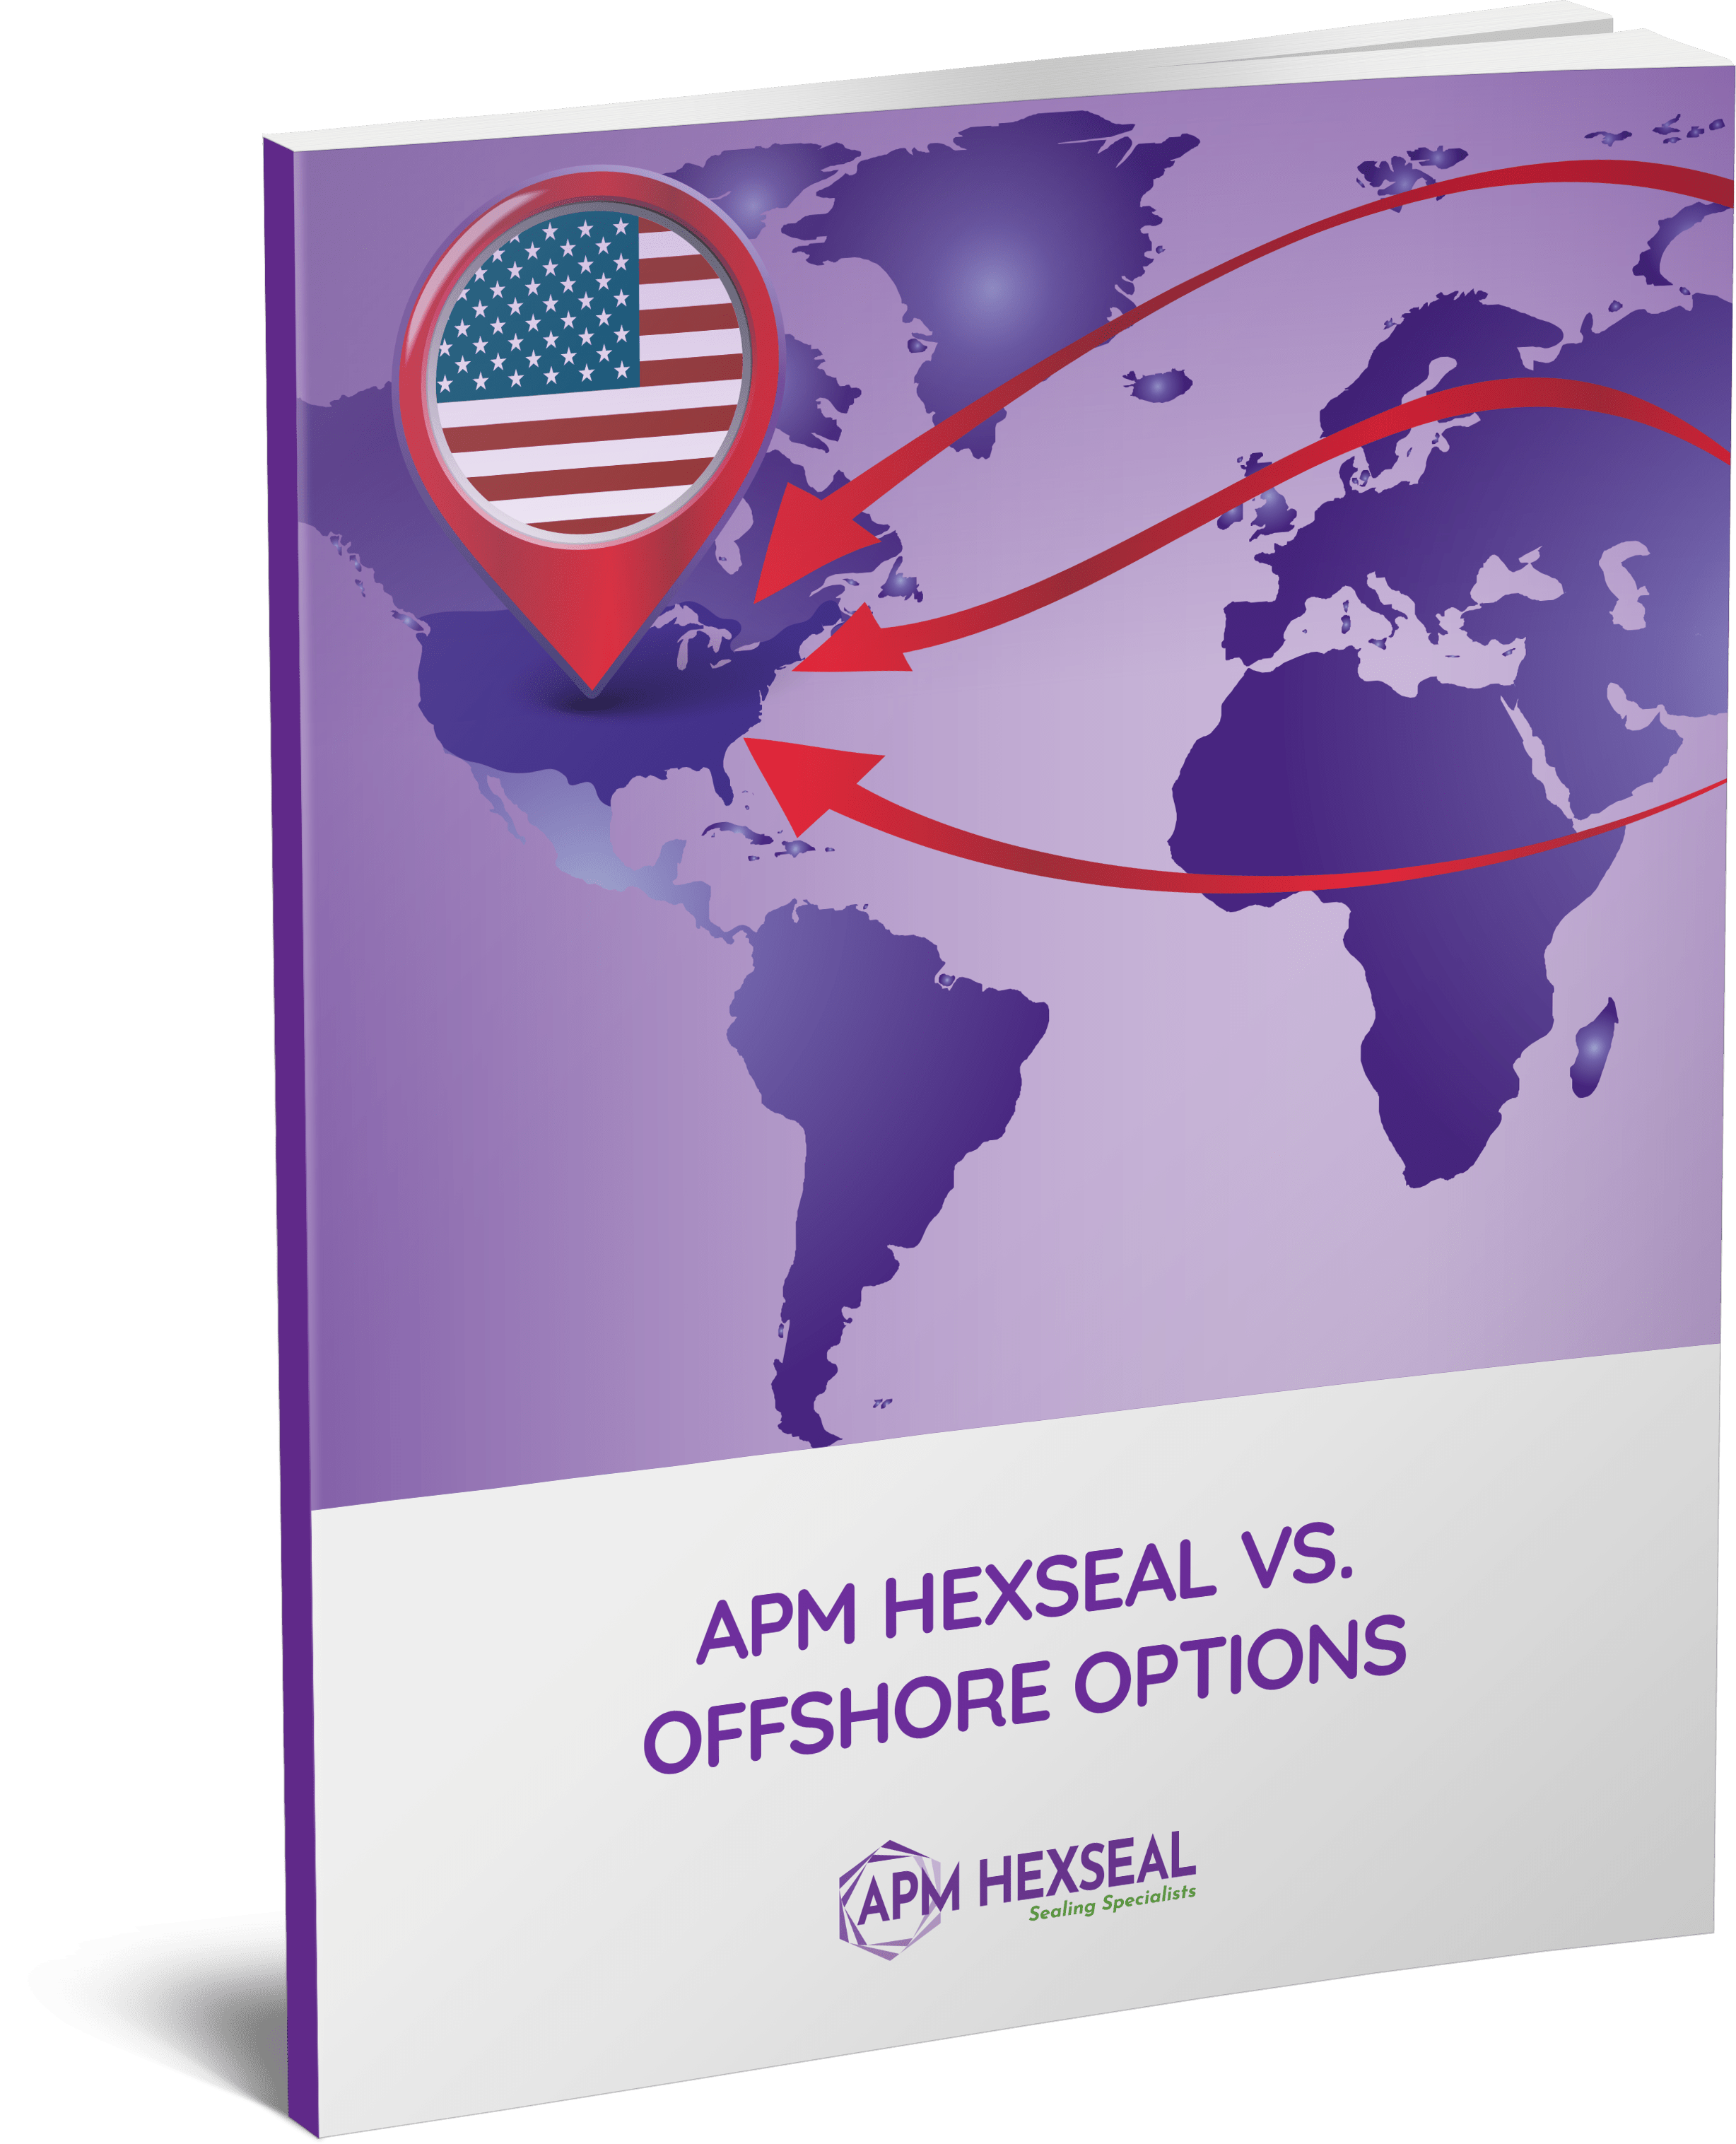 APM Hexseal vs. Offshore Options eBook cover